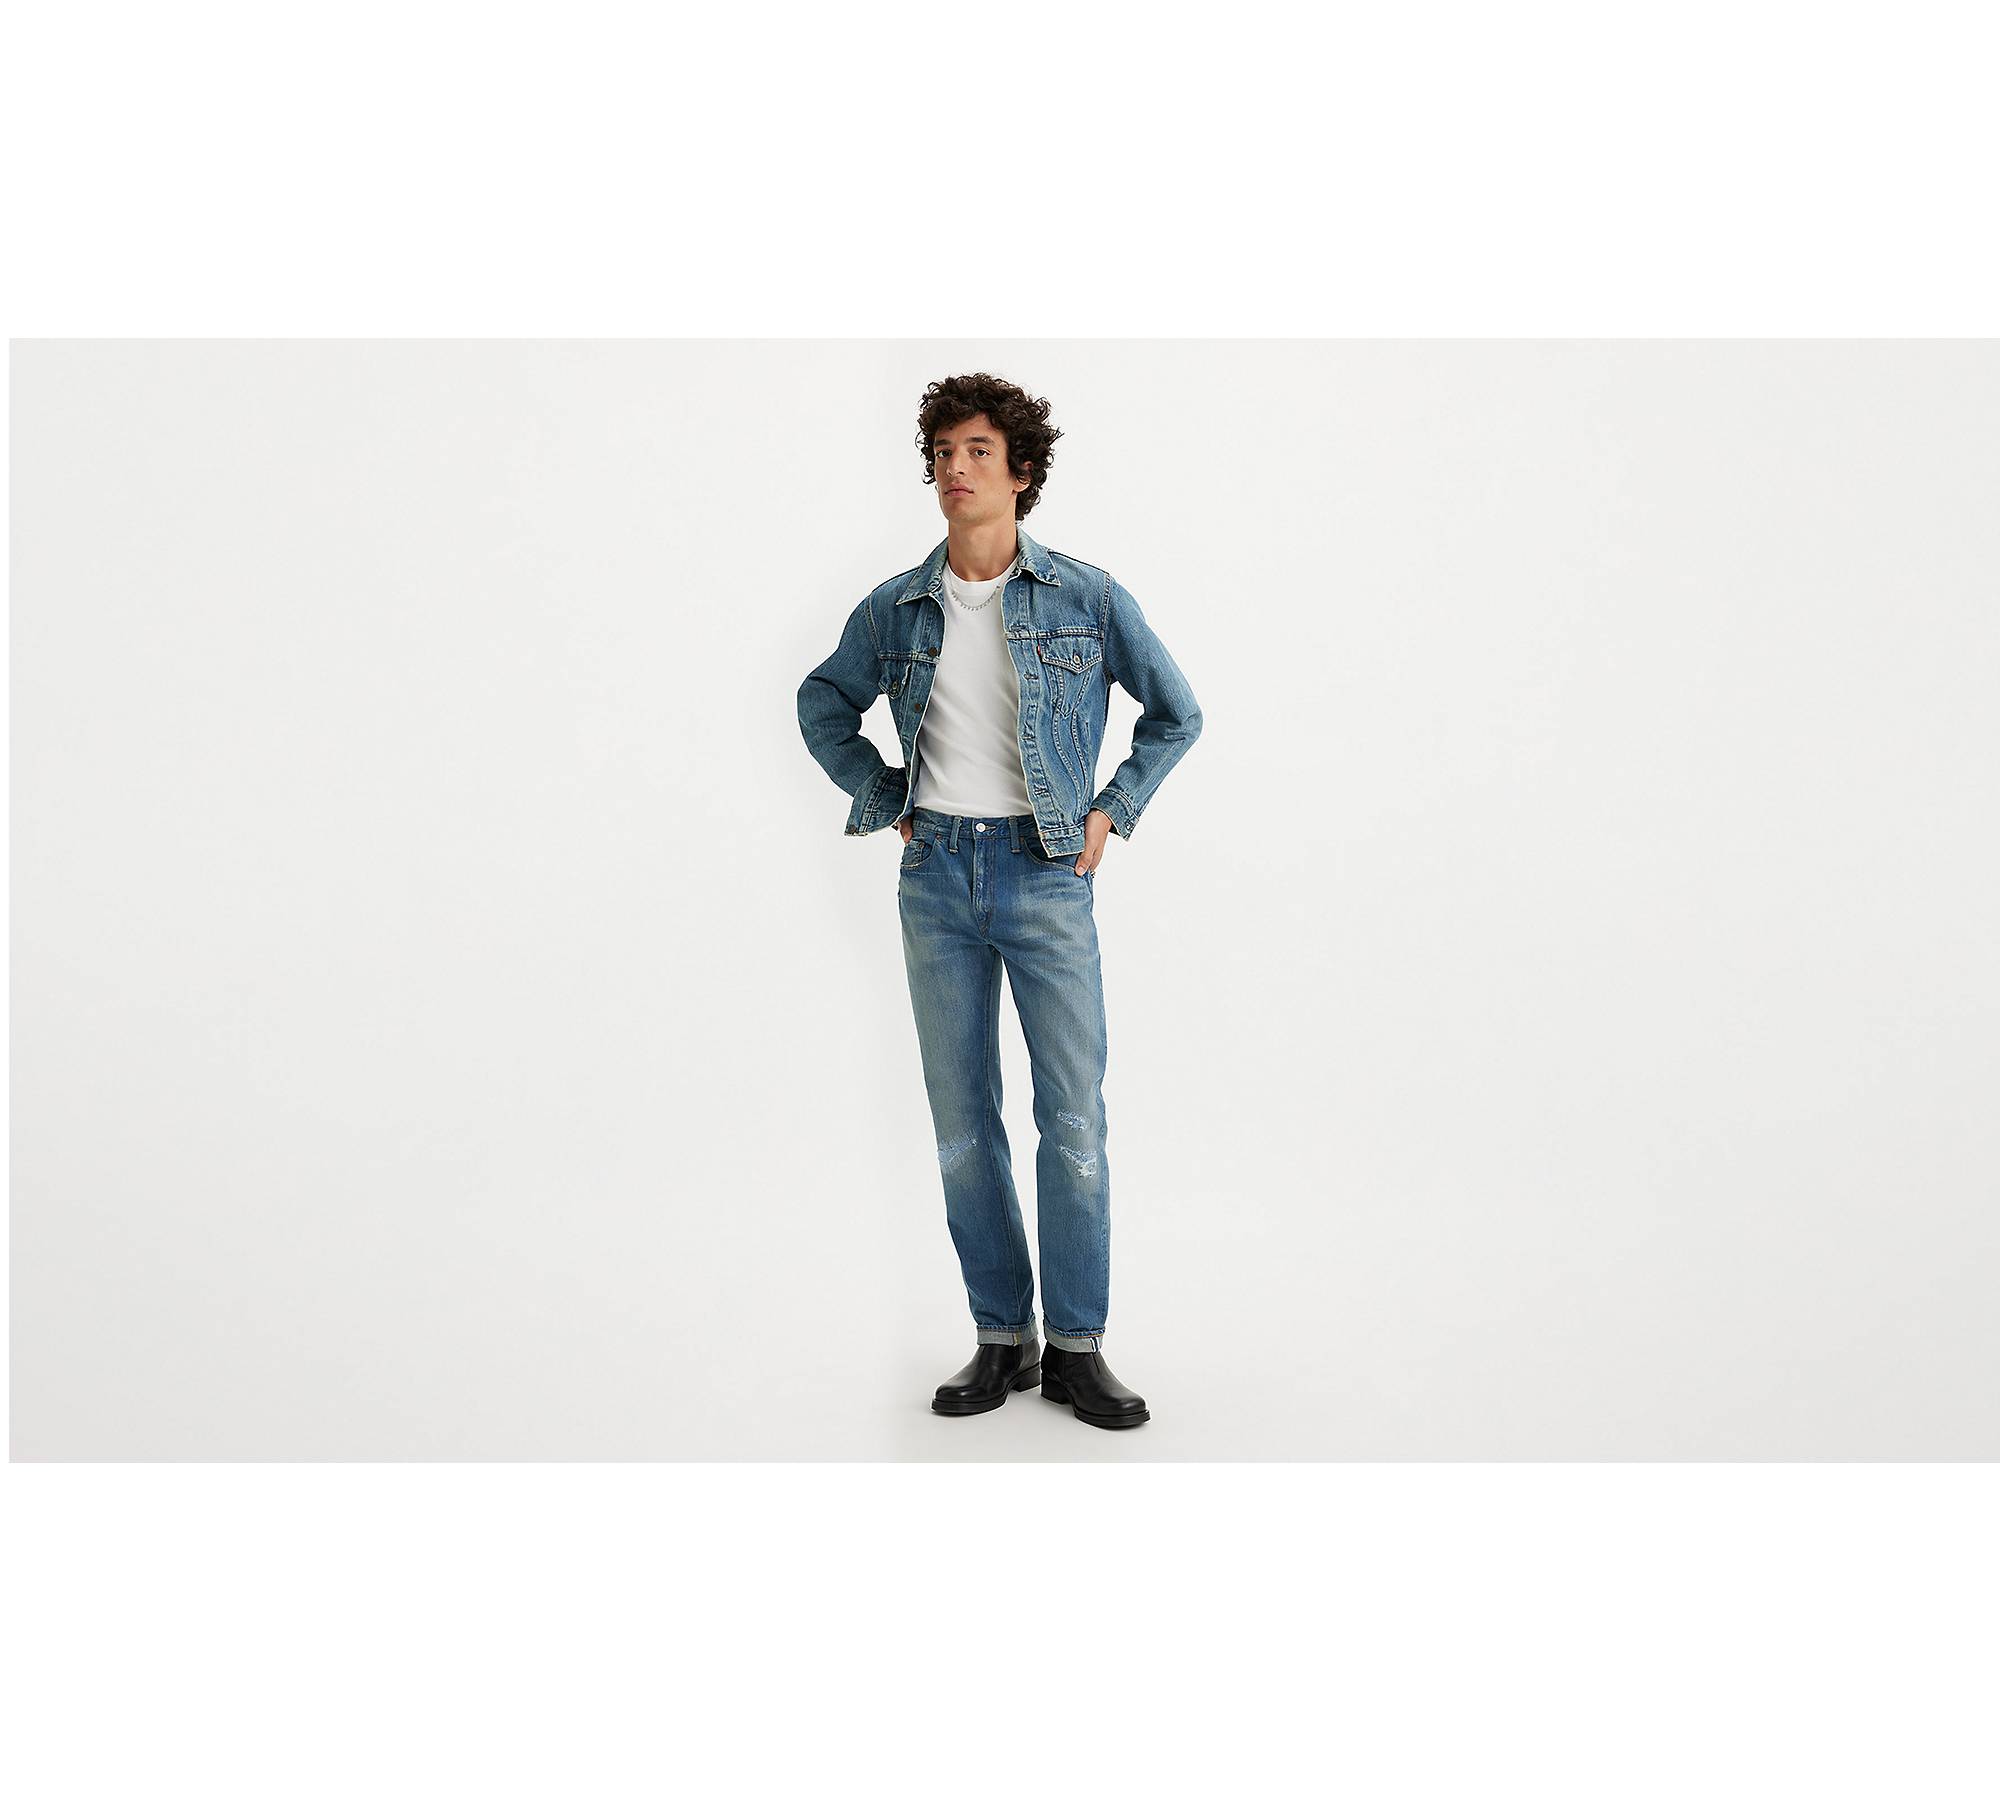 Levi's® Vintage Clothing 1954 501® Jeans - Blue